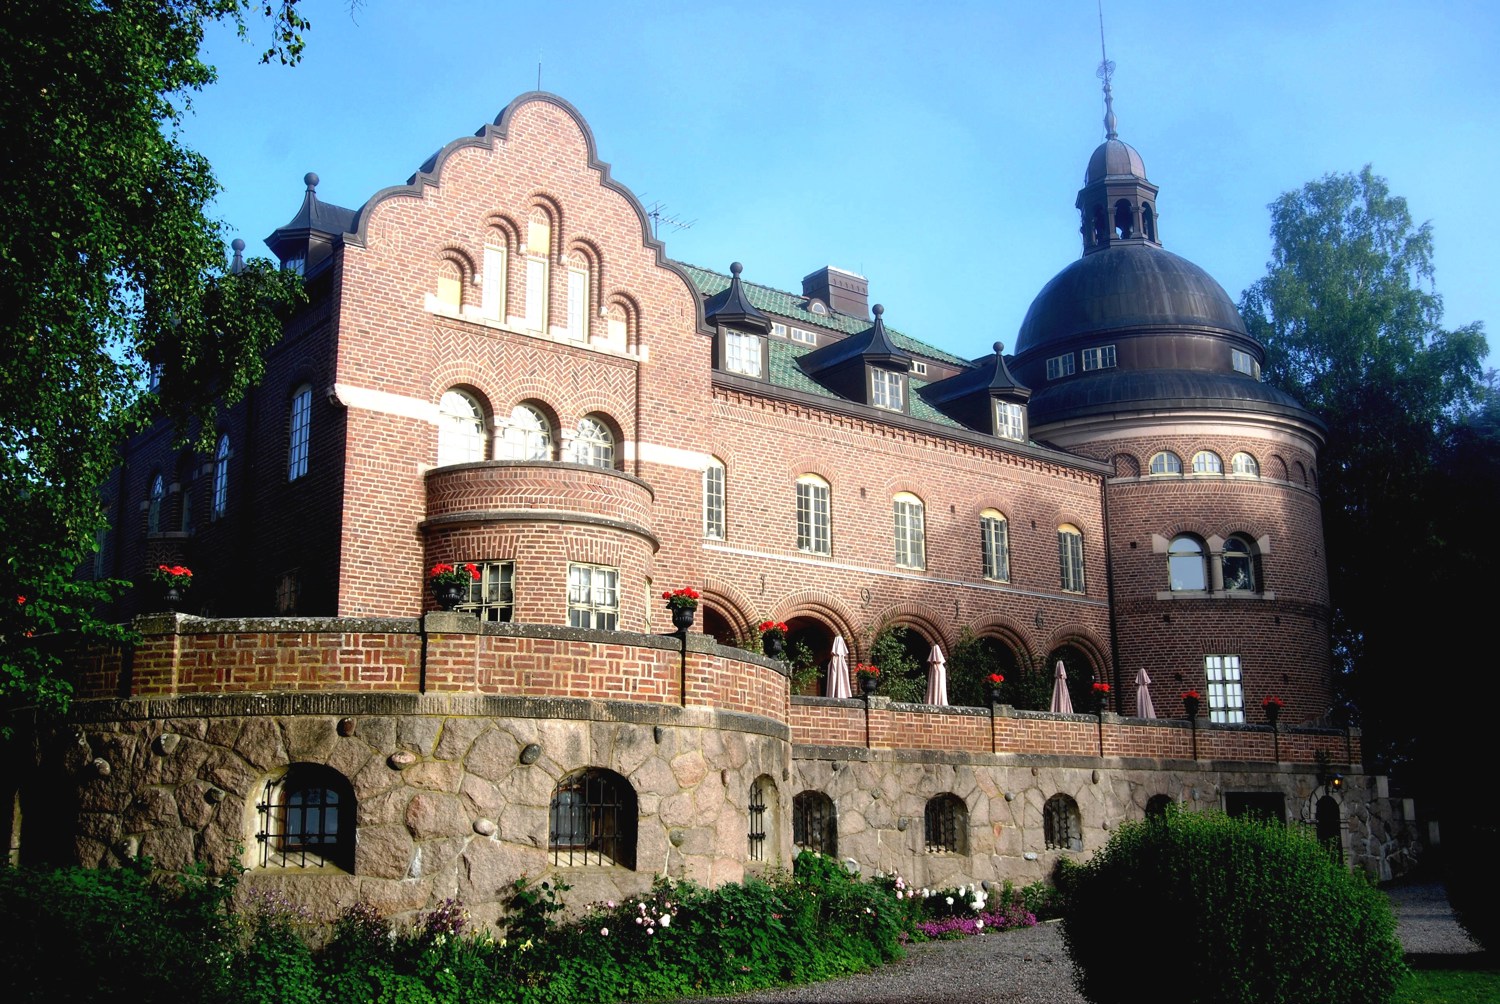 Engsholms slott